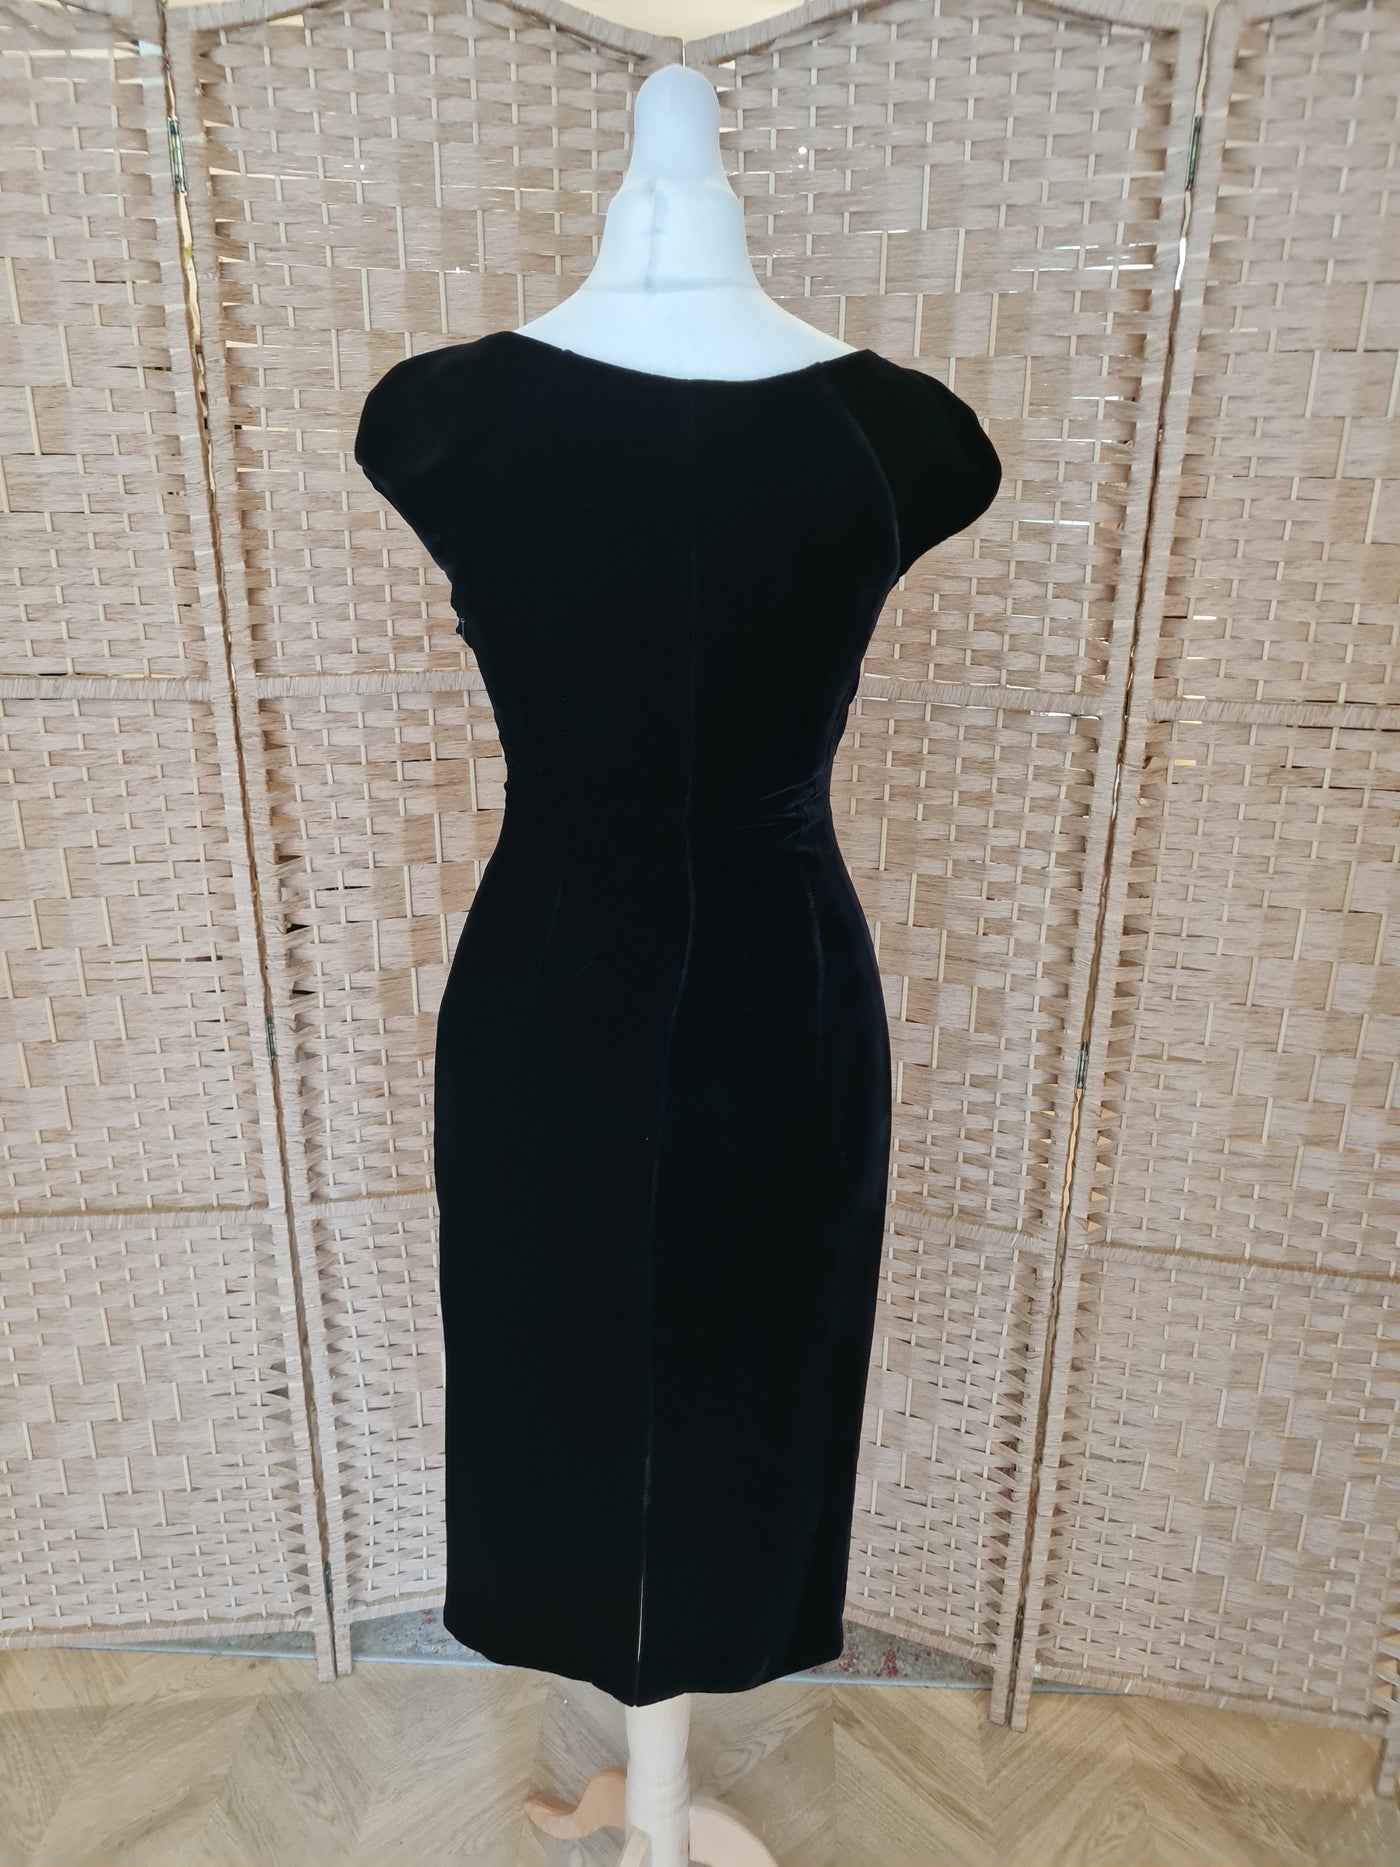 LK Bennett Black Velvet Shift Dress Size 6